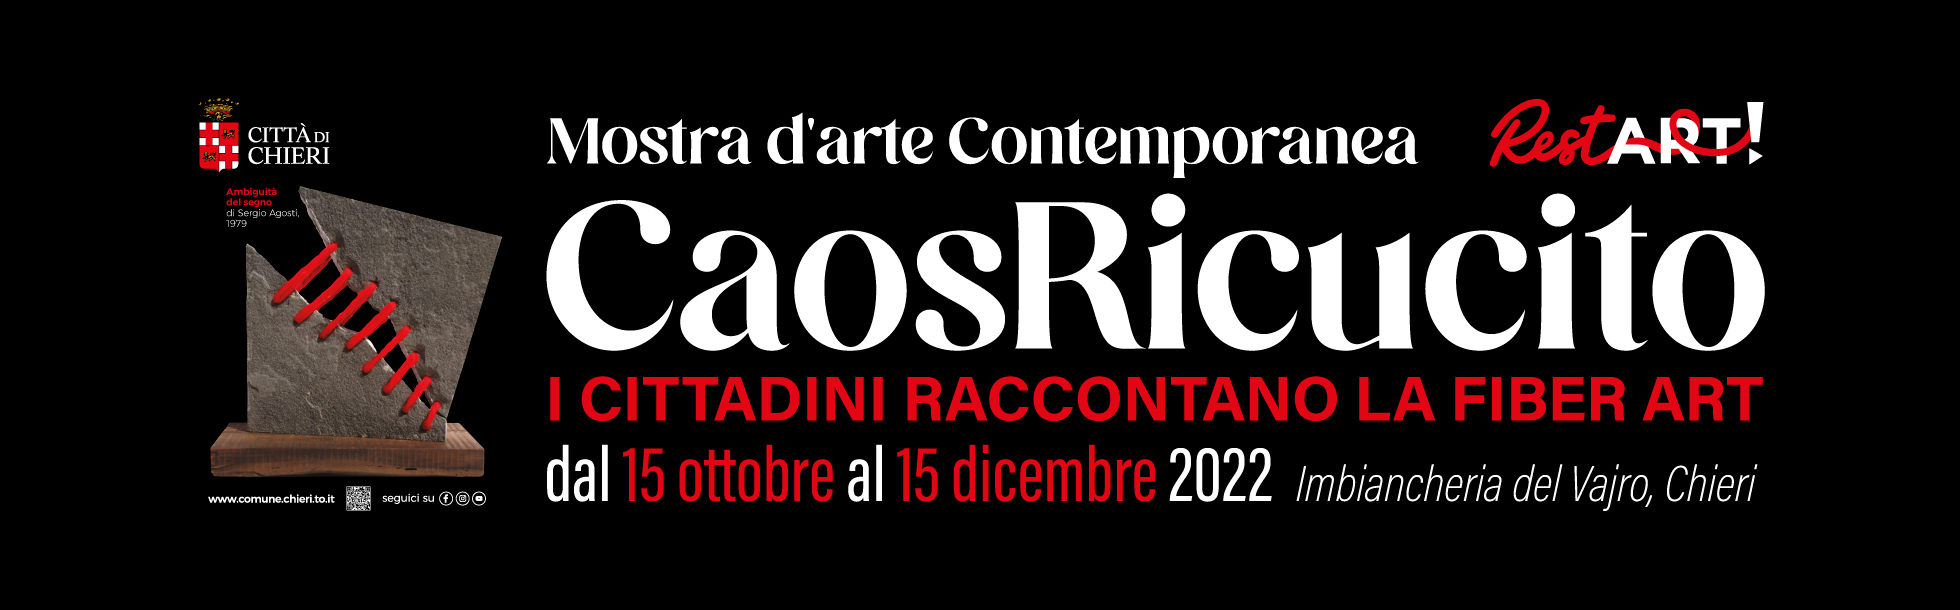 Banner ufficiale Caos Ricucito - mostra d'arte contemporanea